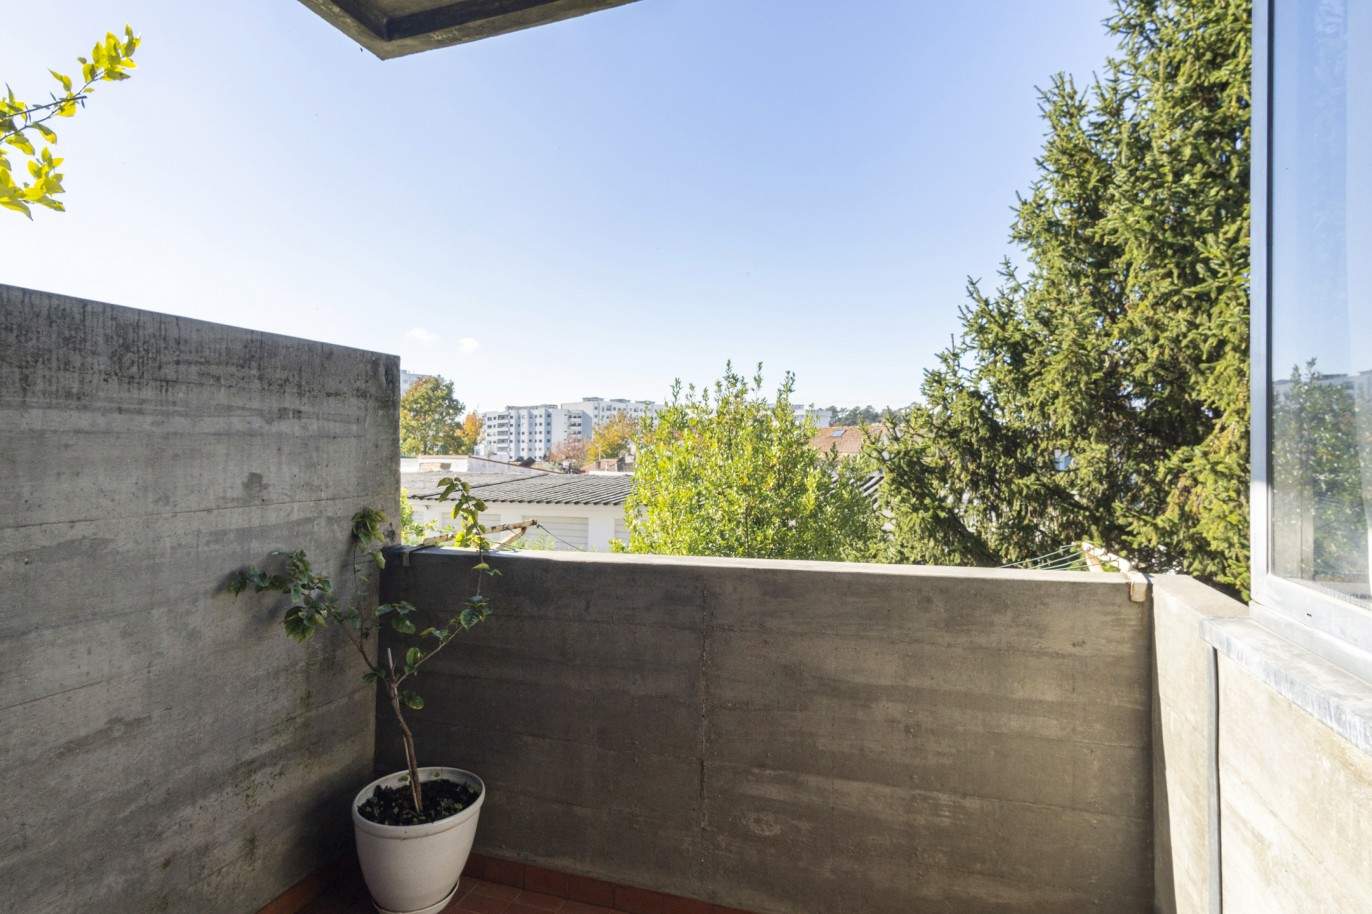 Duplex Wohnung T3+1 mit Balkon, zu verkaufen, in der Nähe der Universität Pole, Porto, Portugal_212454